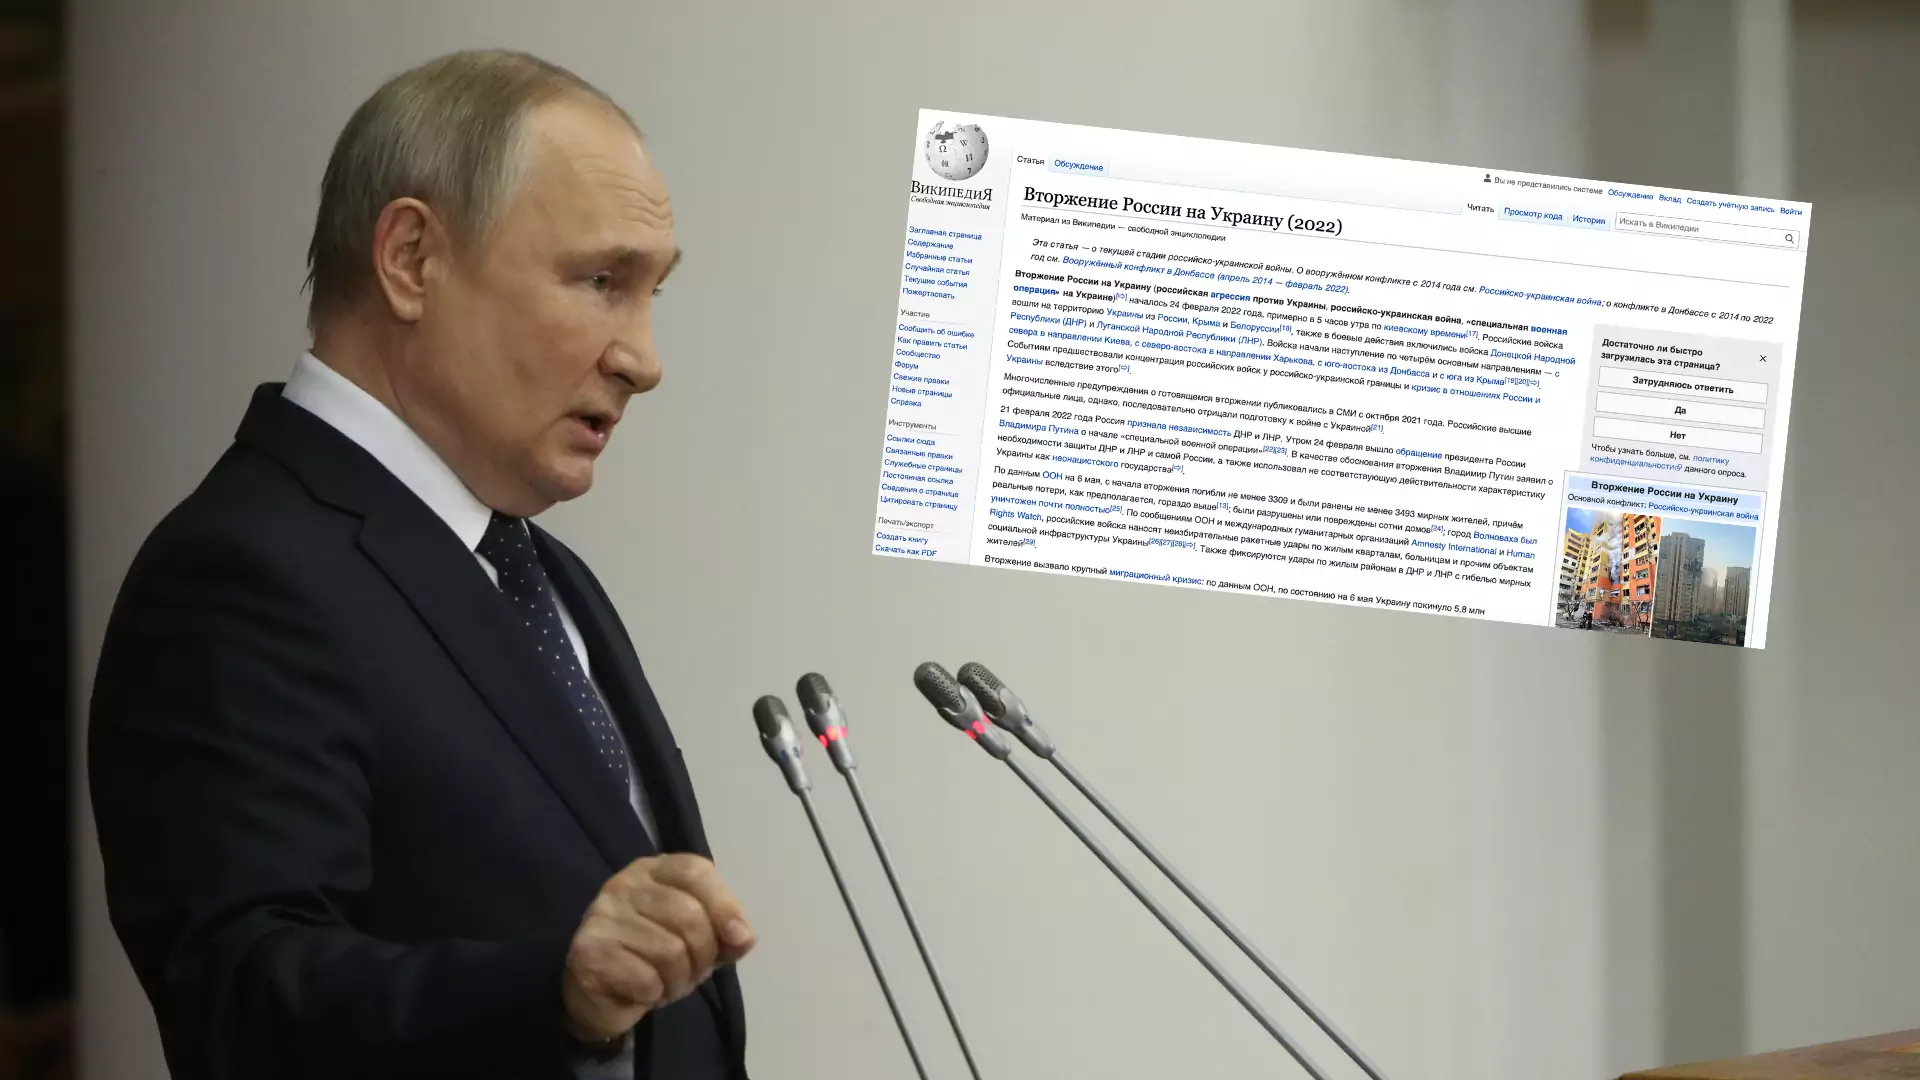 Putin marzy o własnej Wikipedii. Tam będzie mógł głosić swoją "prawdę"